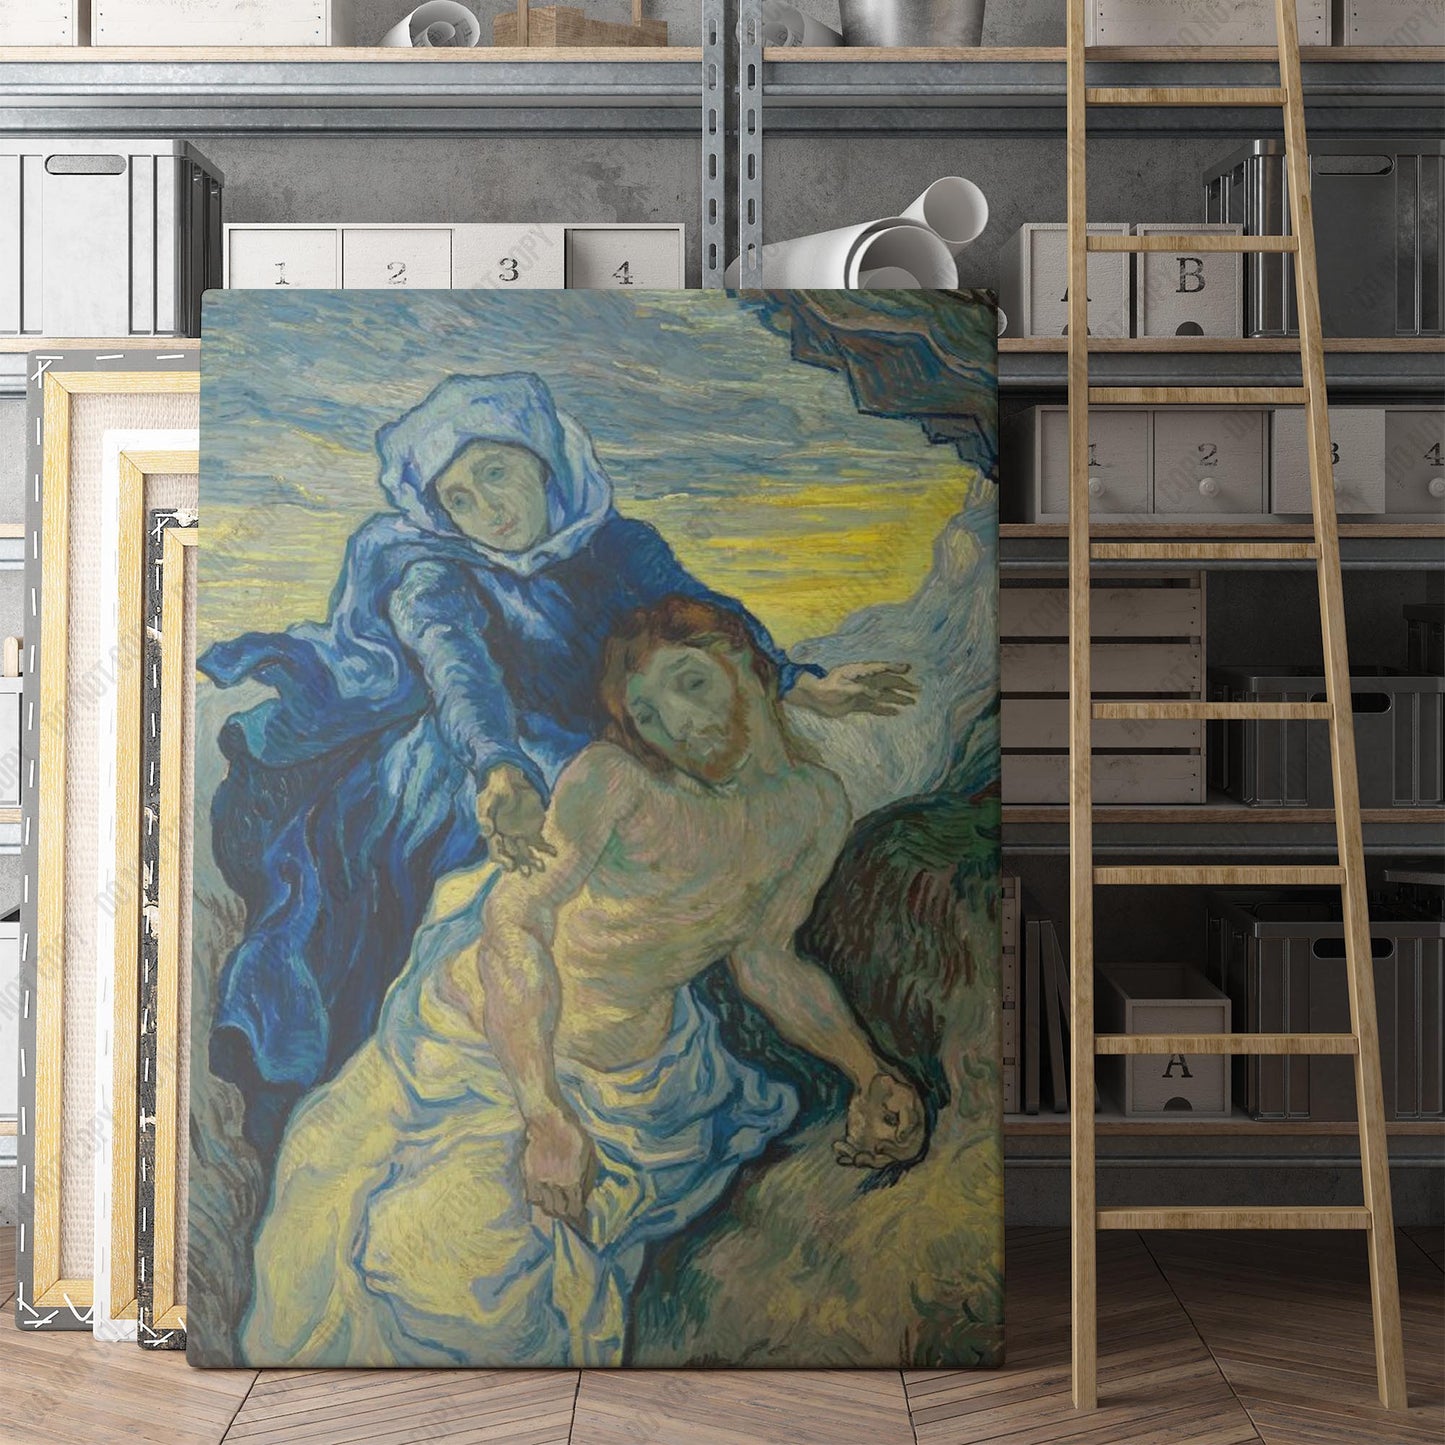 Pietà (after Delacroix) (1889) by Van Gogh